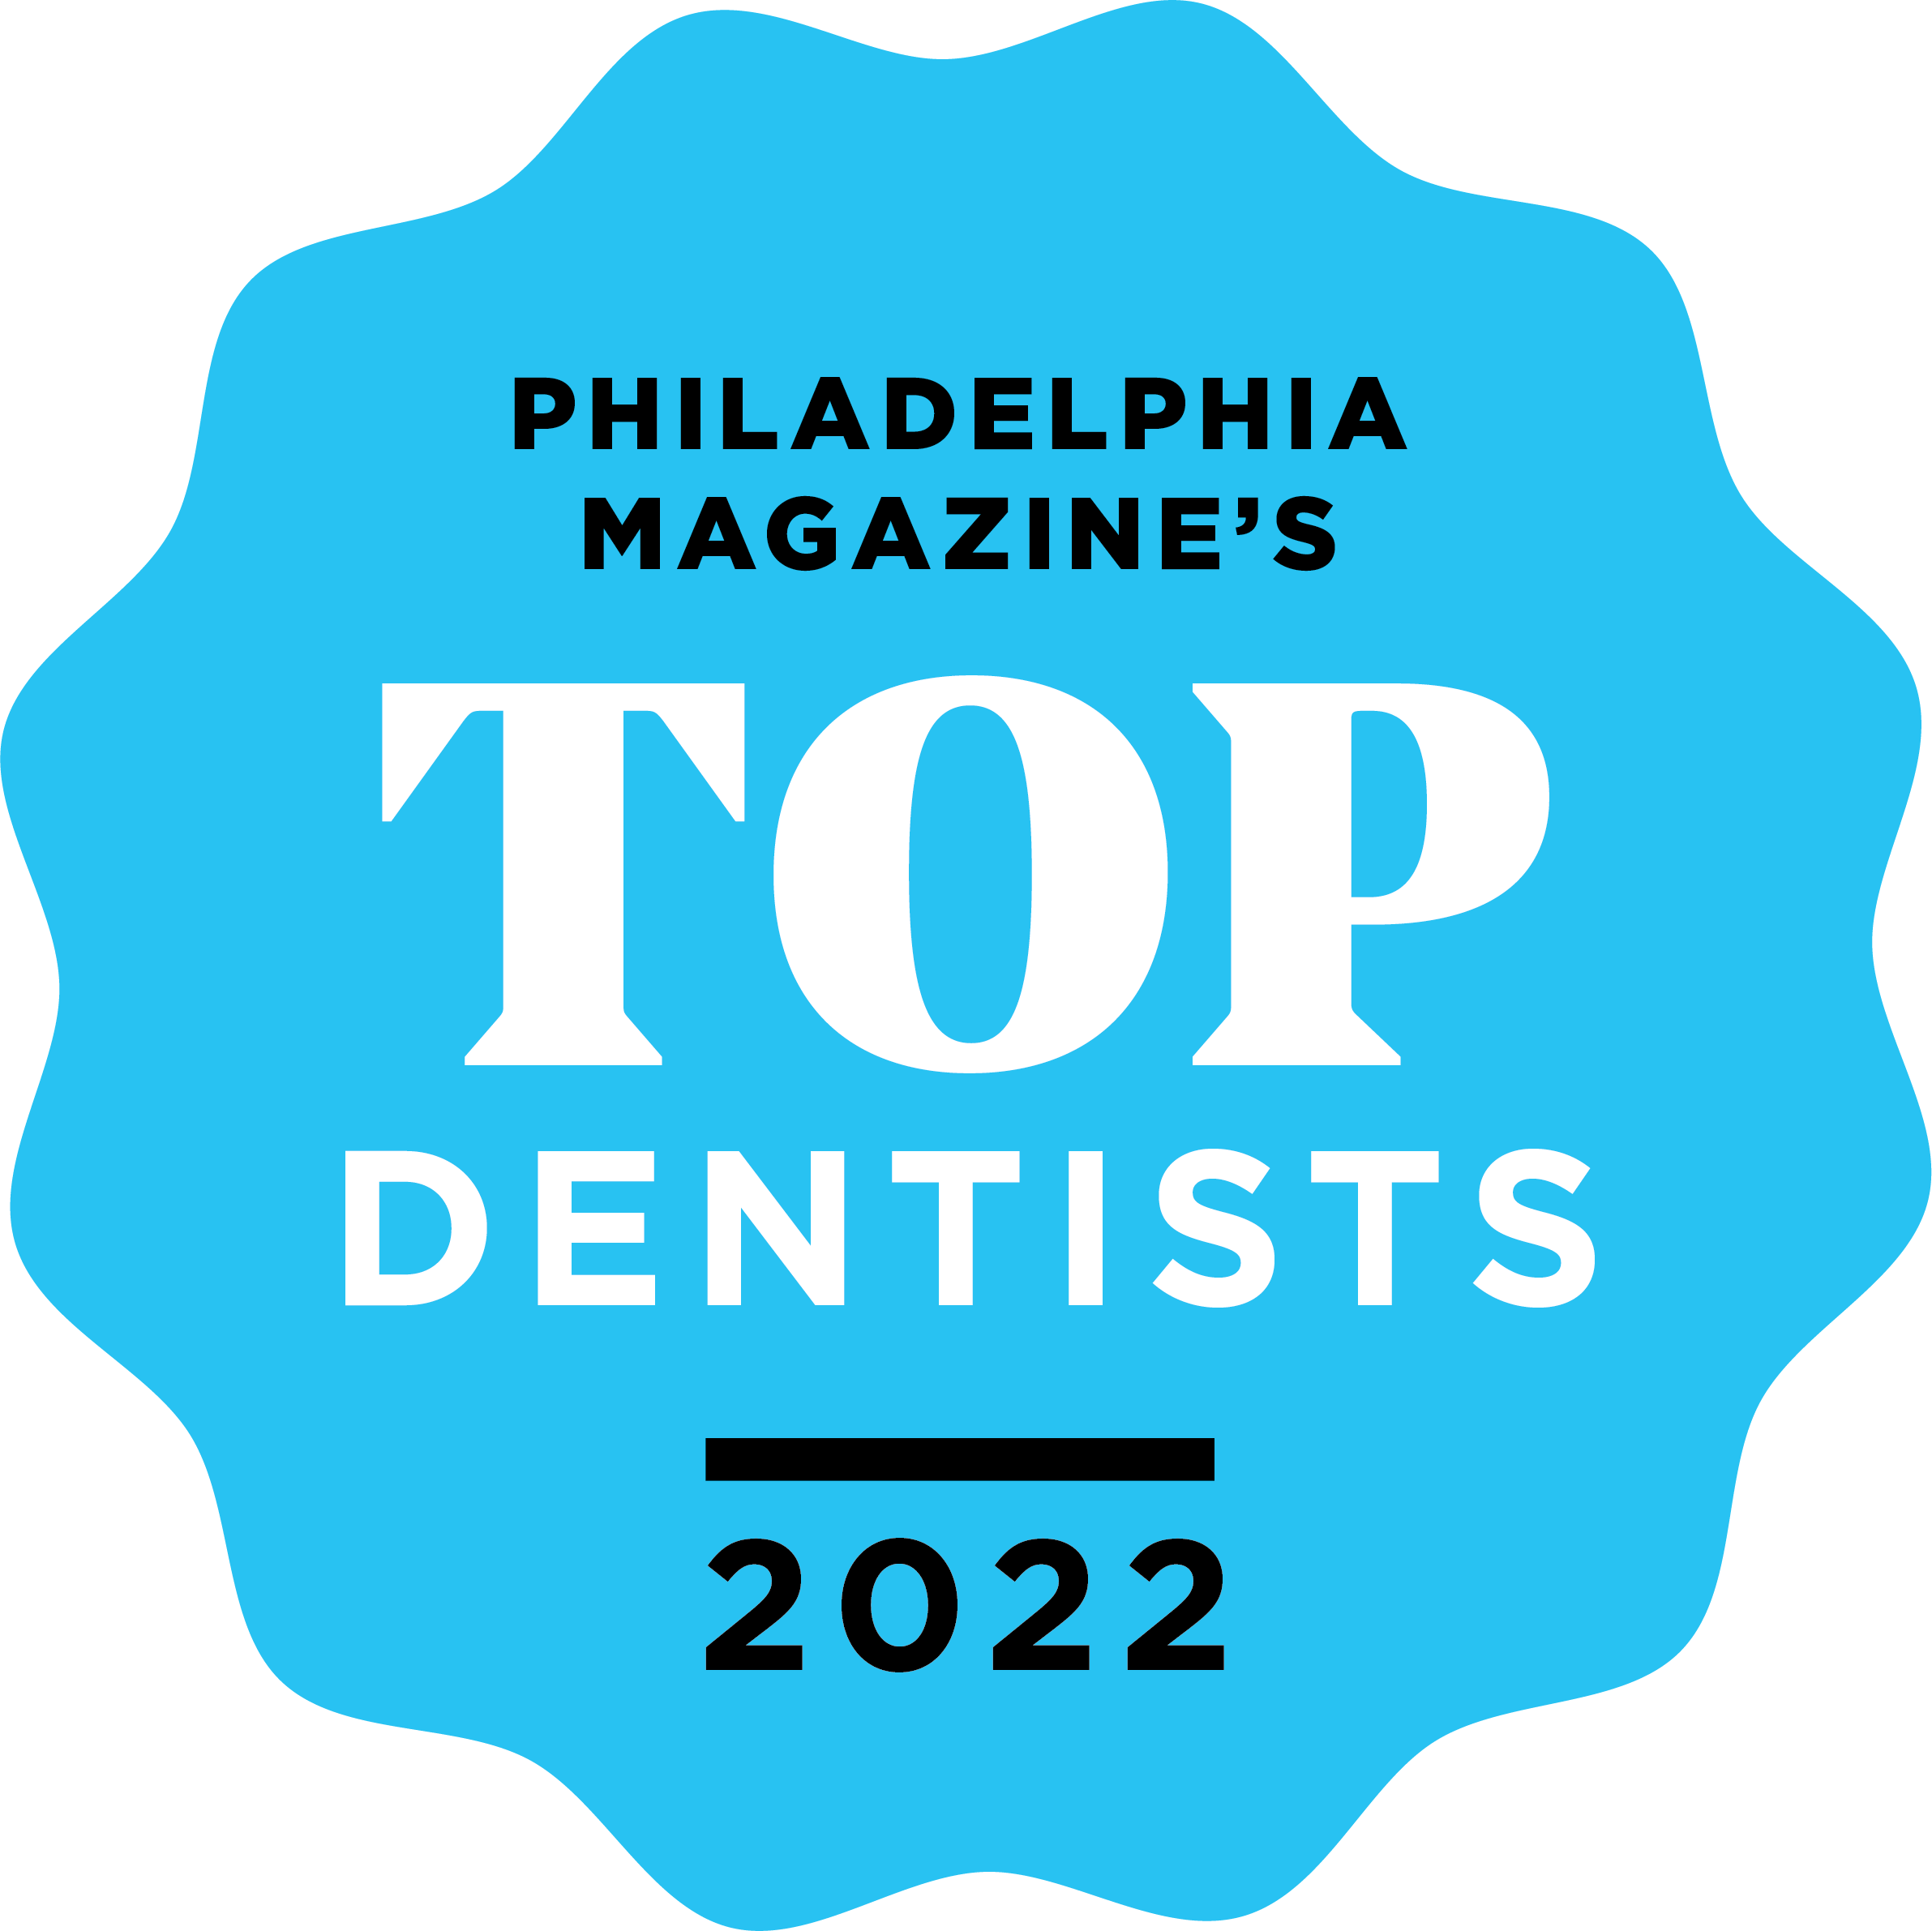 Philadelphia Magazine's Top Dentists 2022